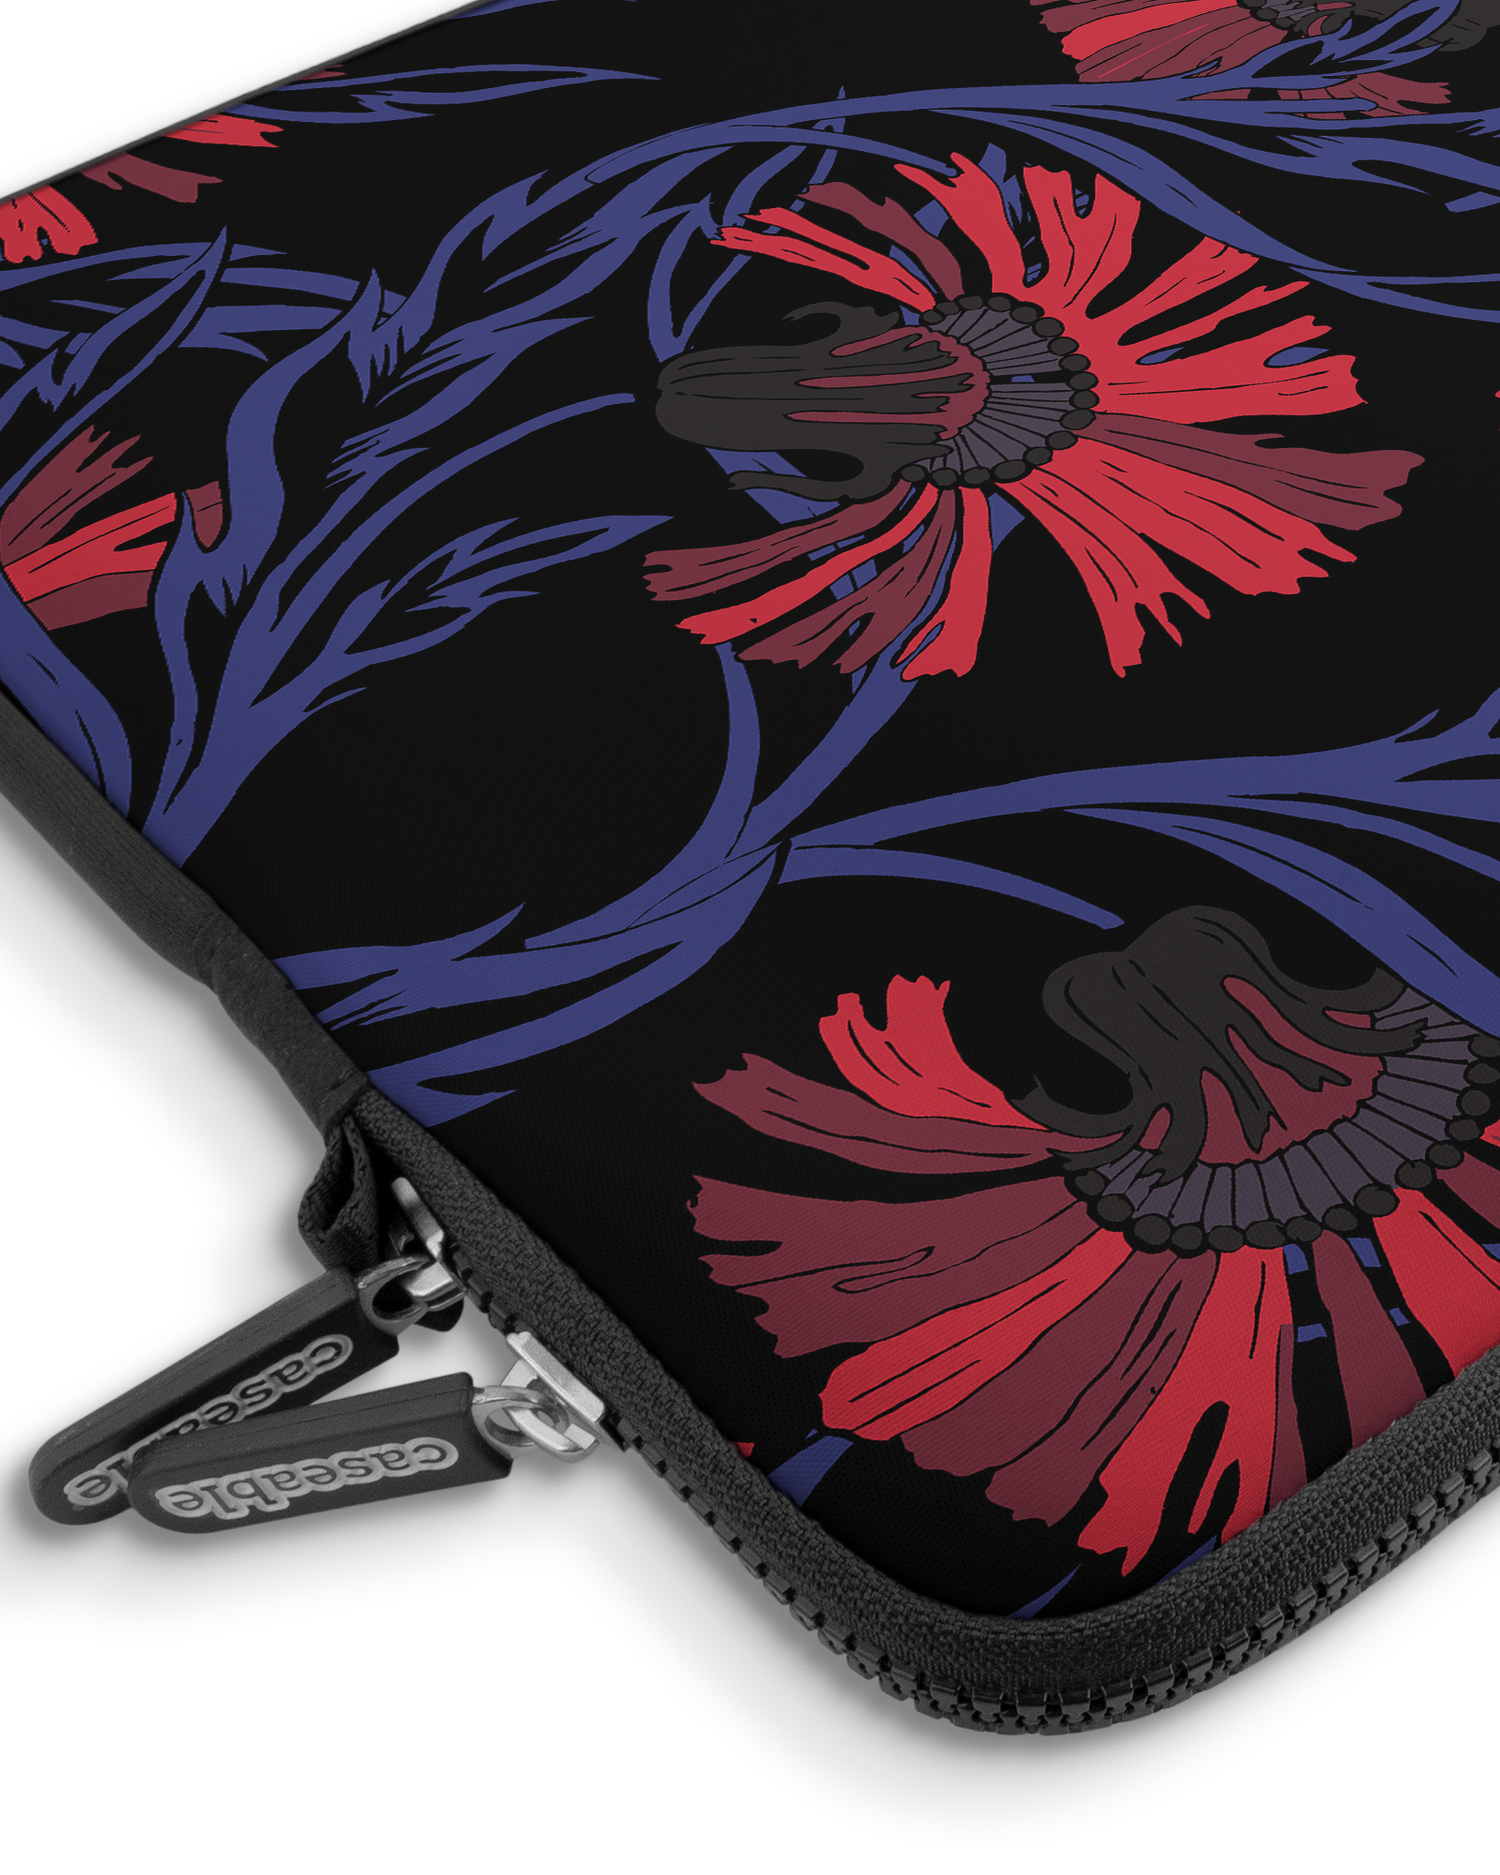 Midnight Floral Premium Laptoptasche 15 Zoll mit Gerät im Inneren